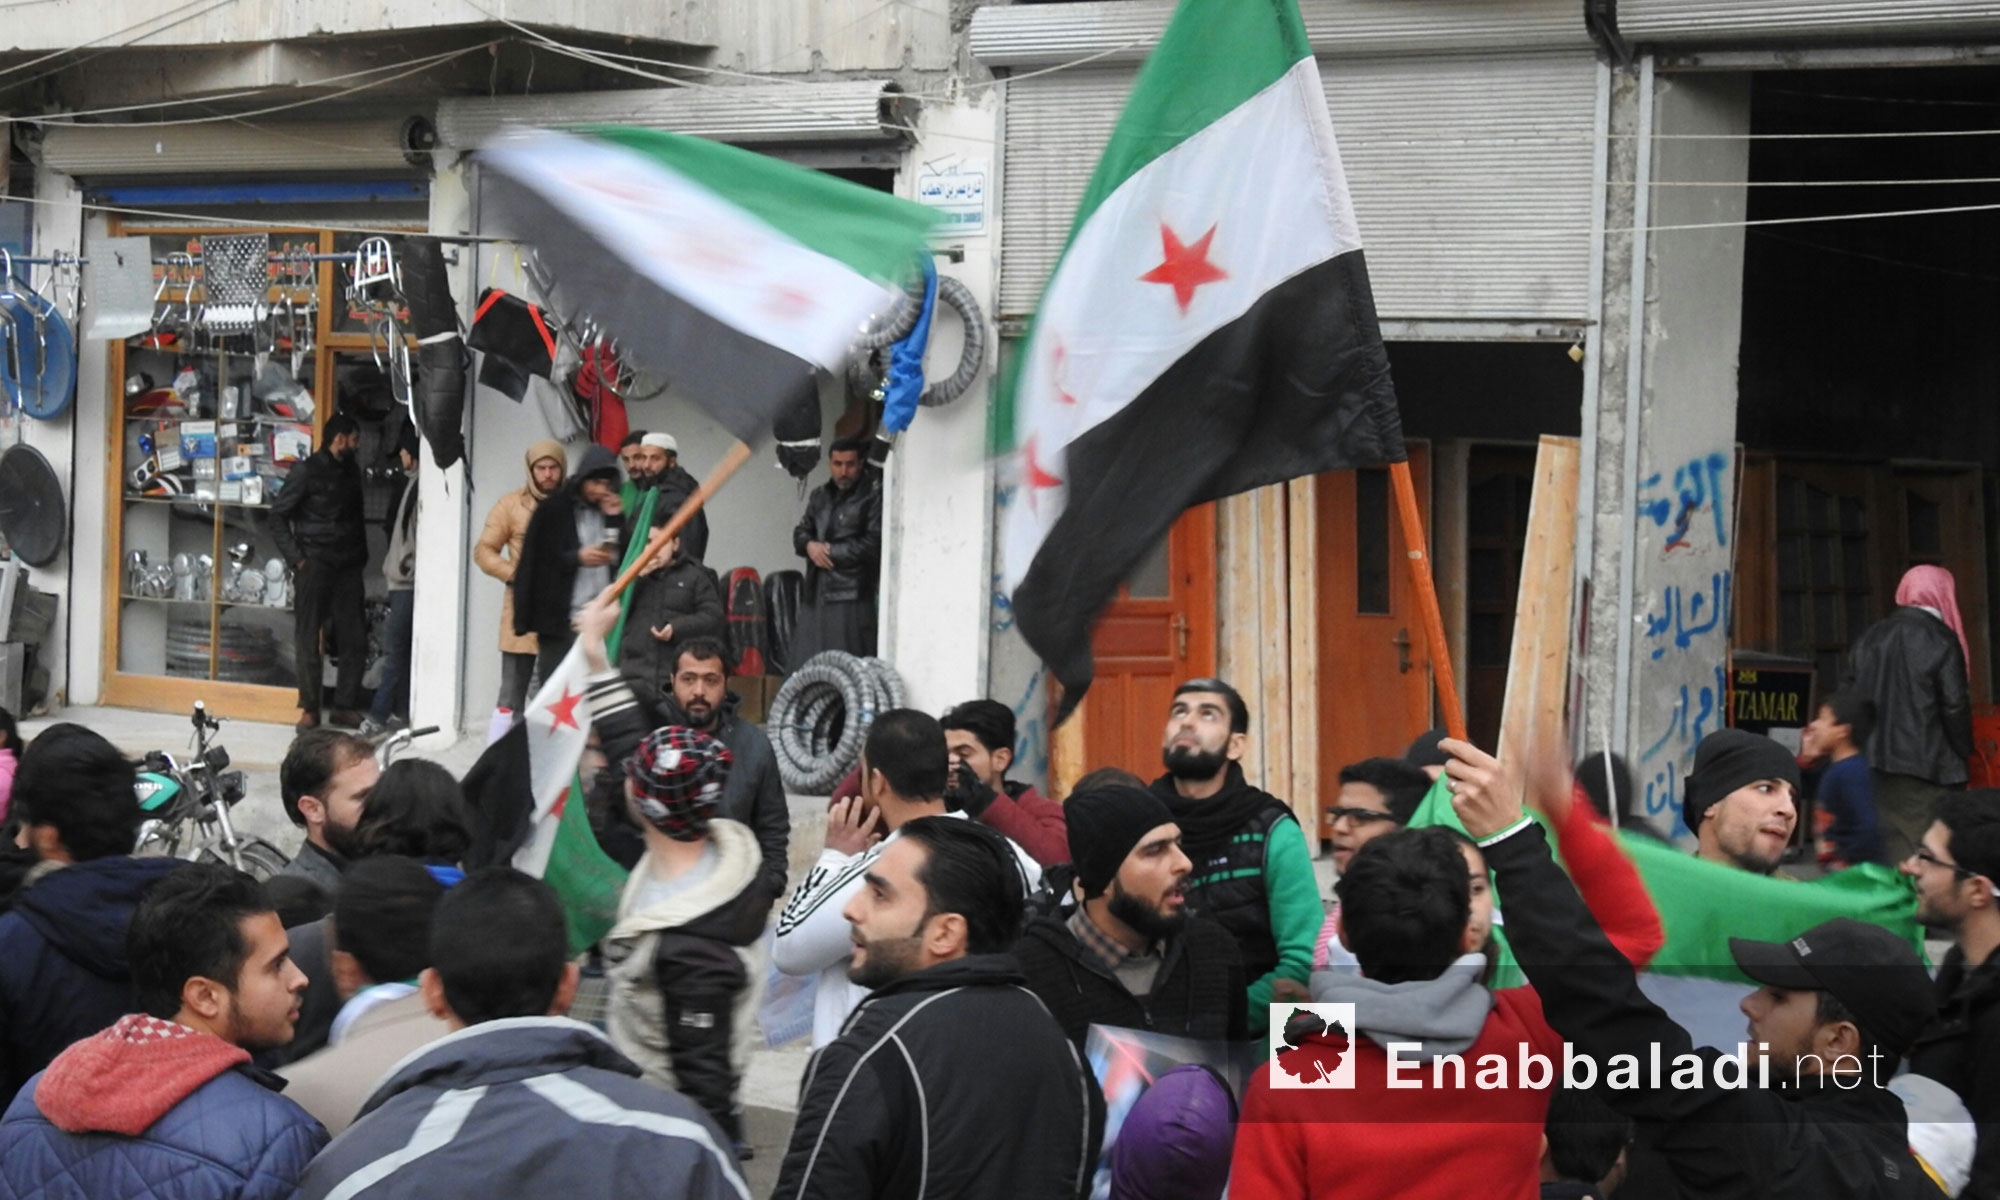 مظاهرة للتأكيد على مبادئ الثورة السورية ورفض تحليق الطيران الروسي في مدينة الباب بريف حلب الشرقي - 30 تشرين الثاني 2017 (عنب بلدي)